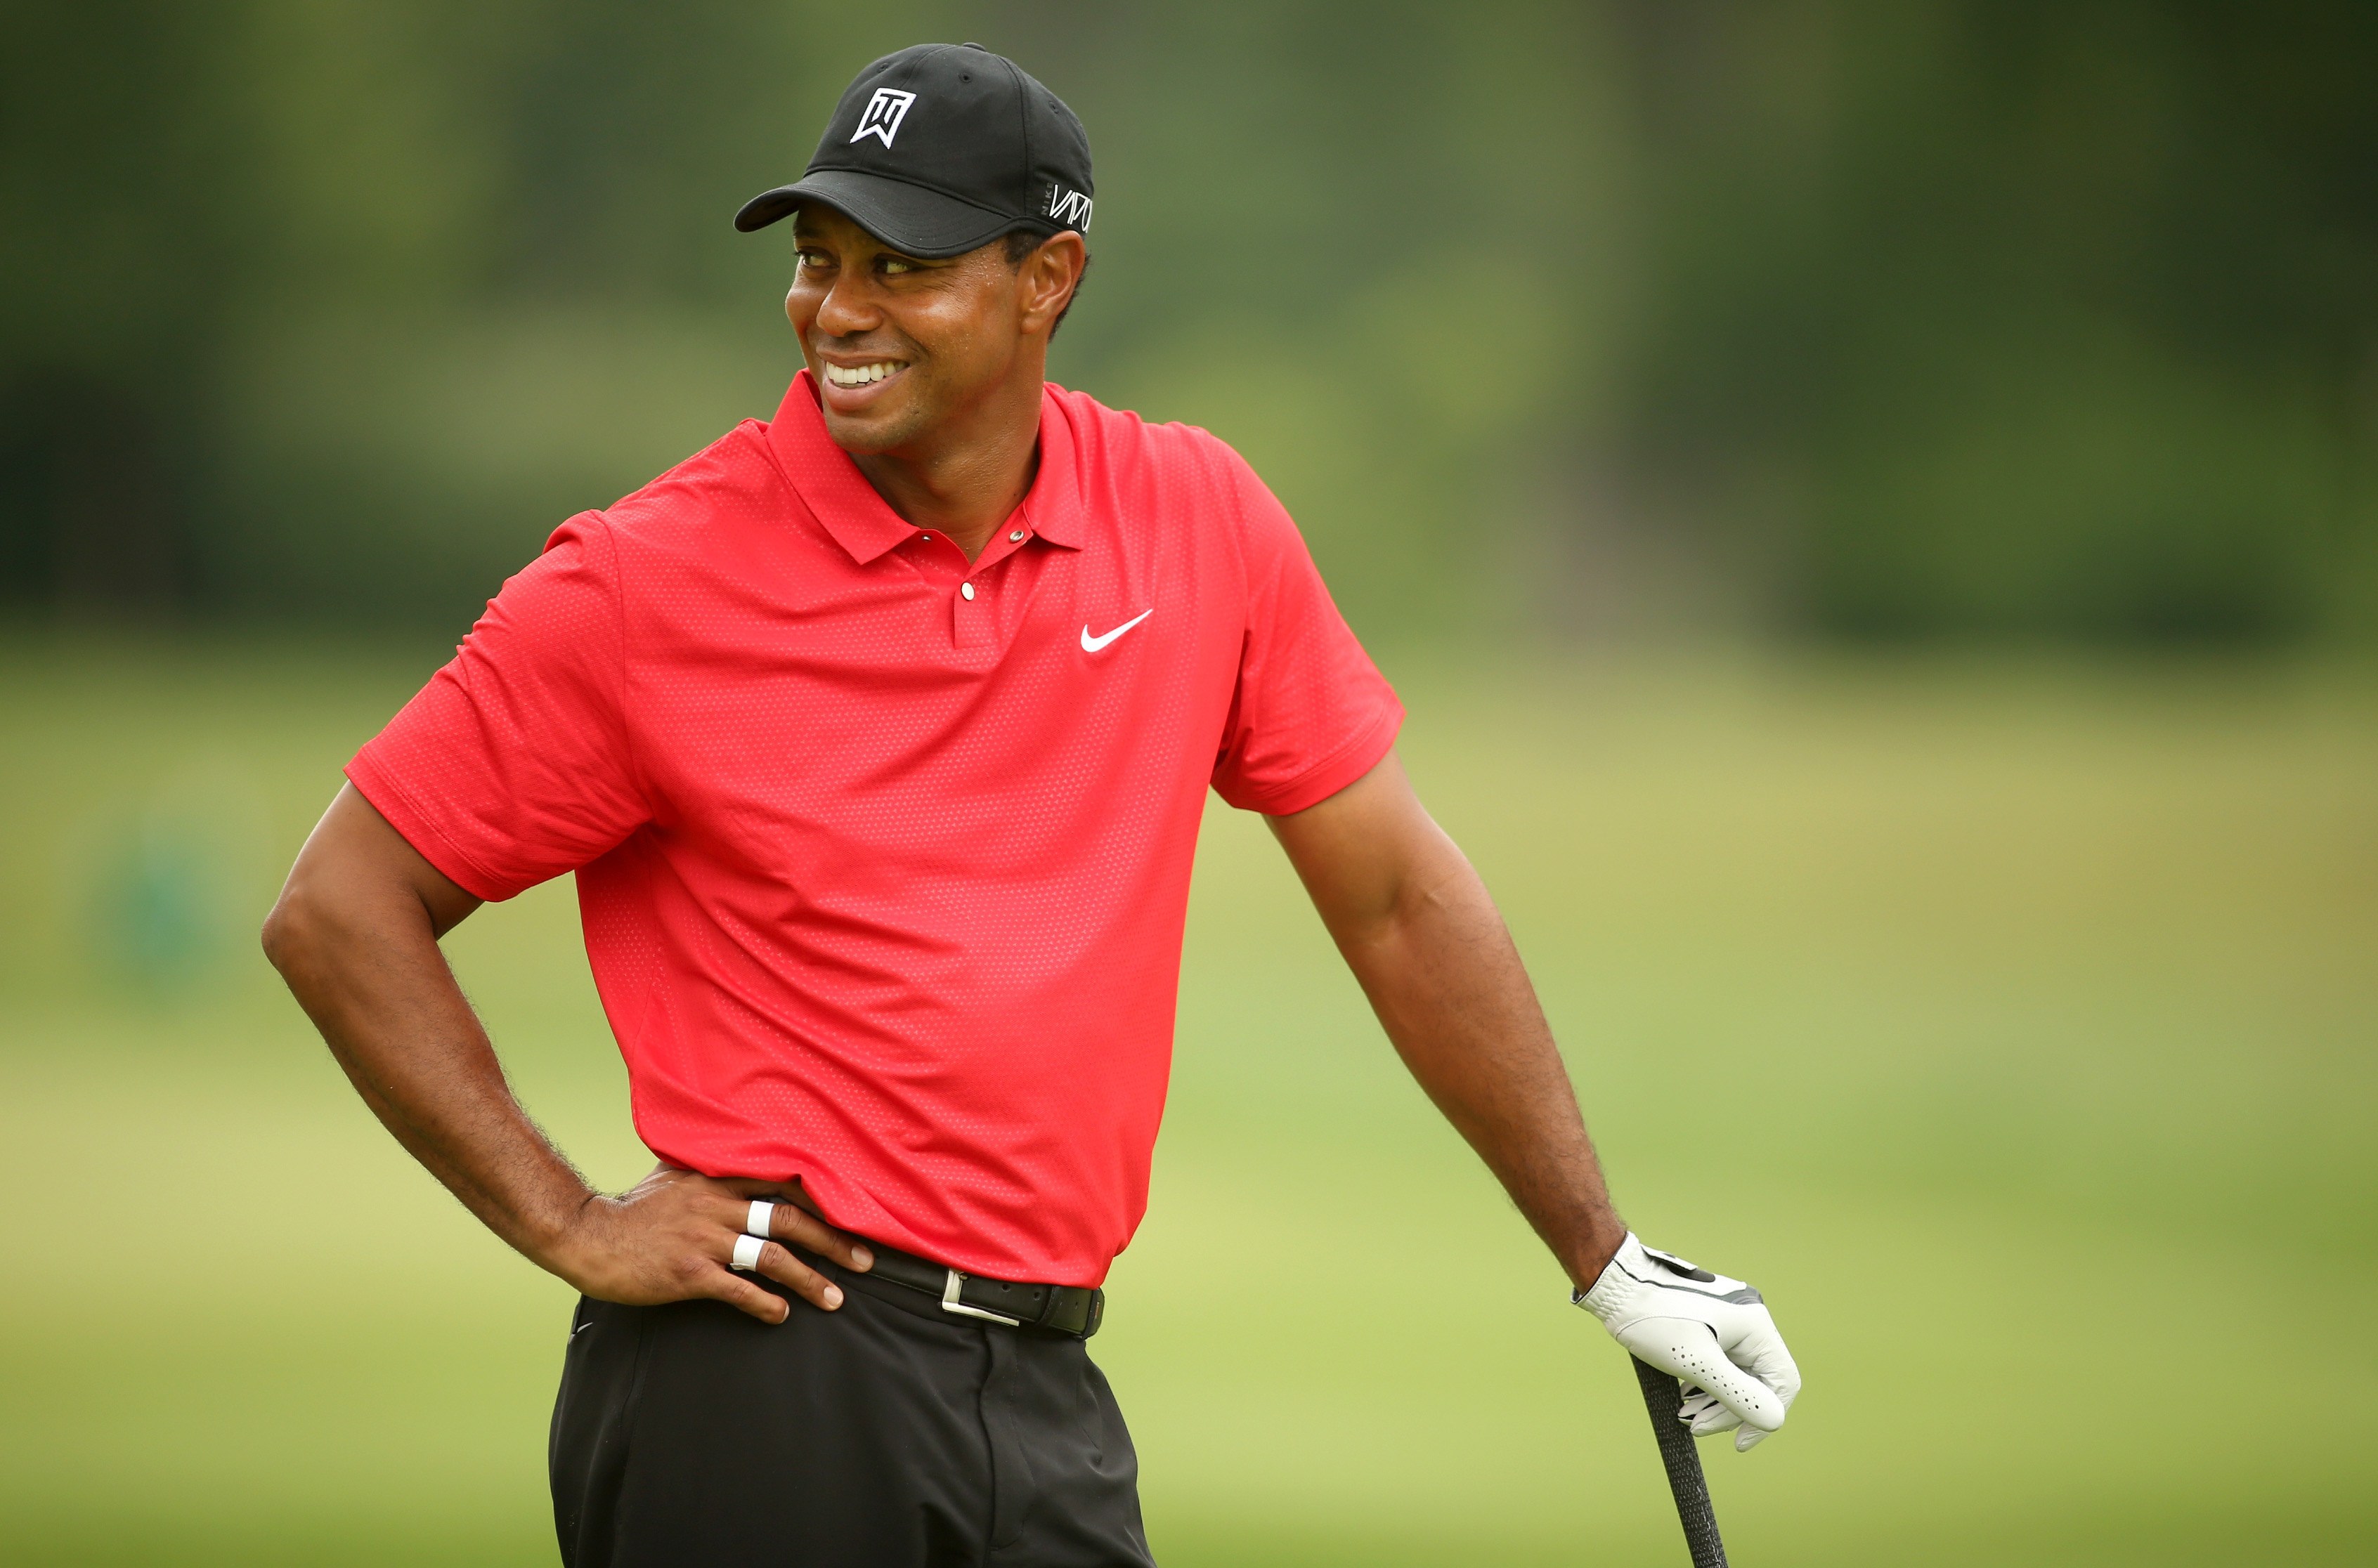 Tiger Woods registered for 2016 U.S. Open at Oakmont - Golf Digest